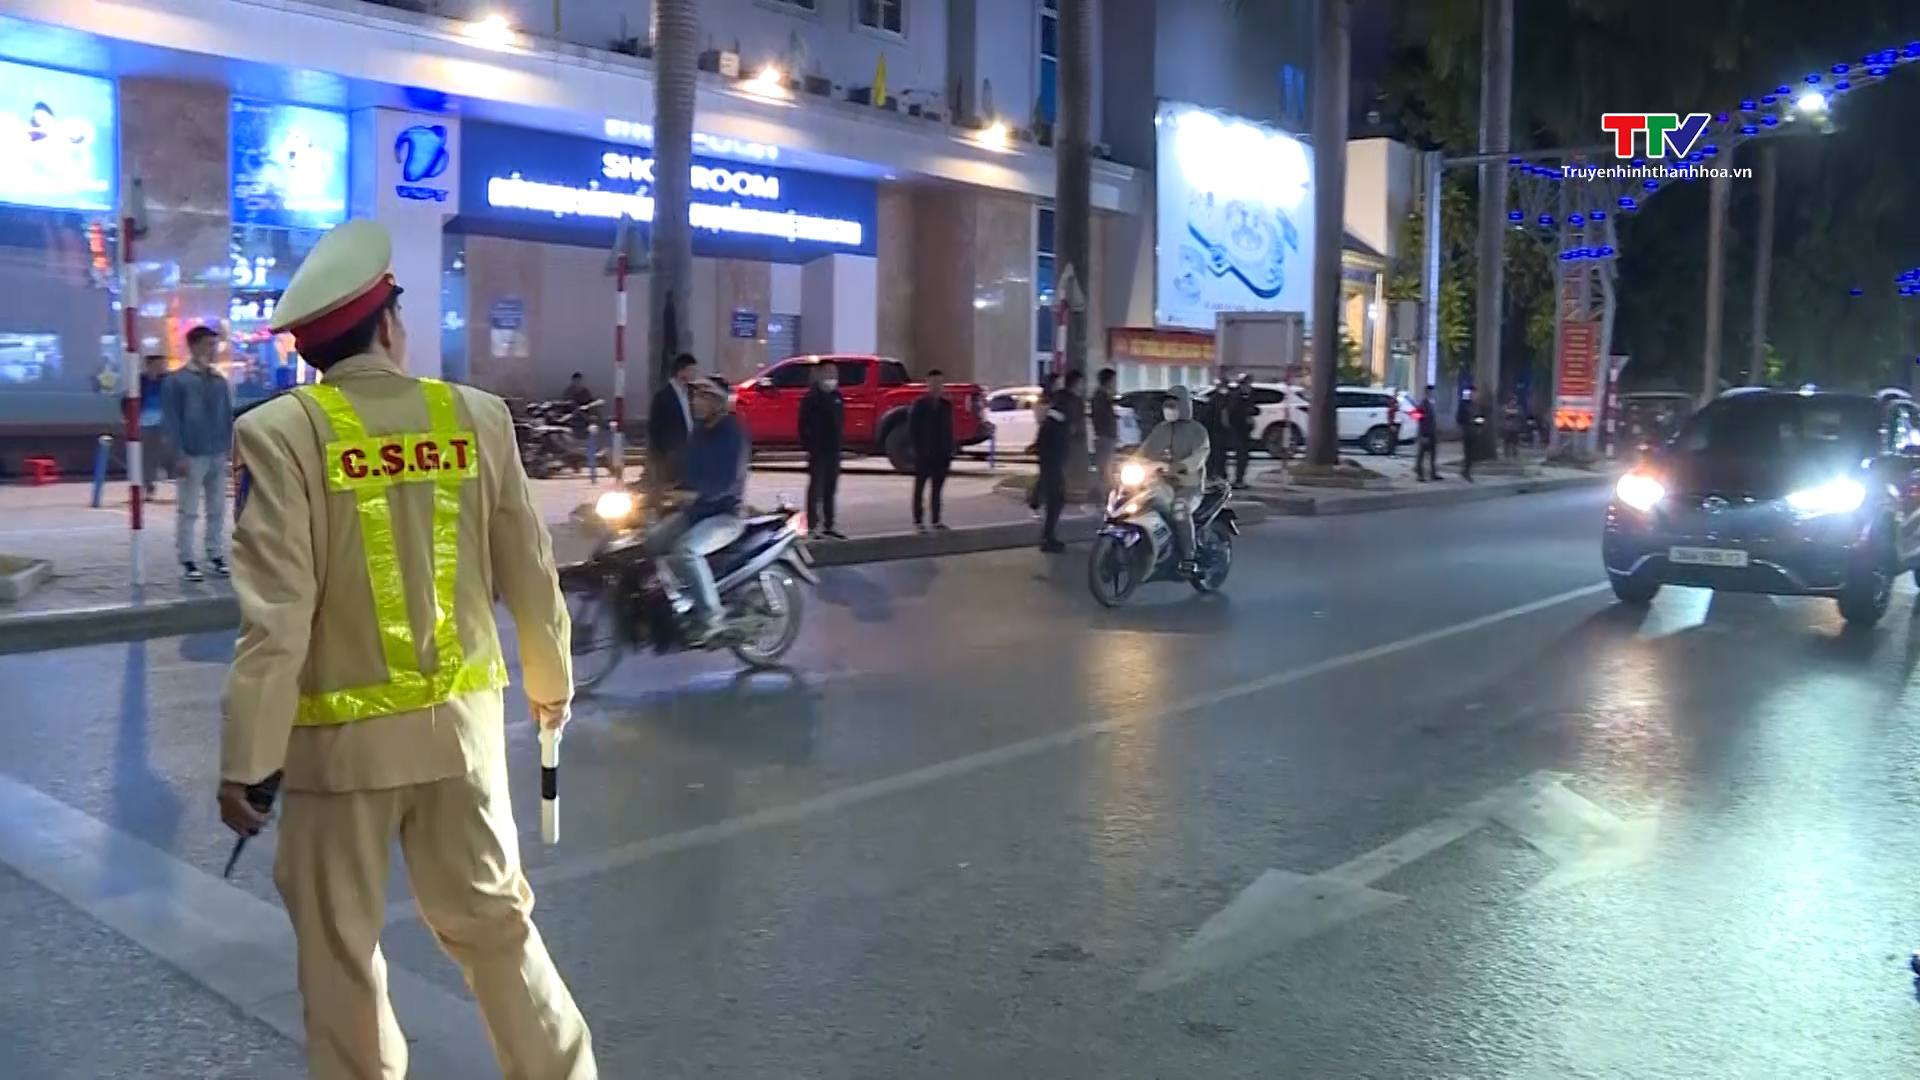 Hiệu quả tổ công tác 282 đảm bảo an ninh trật tự - an toàn giao thông trên địa bàn thành phố Thanh Hoá- Ảnh 1.